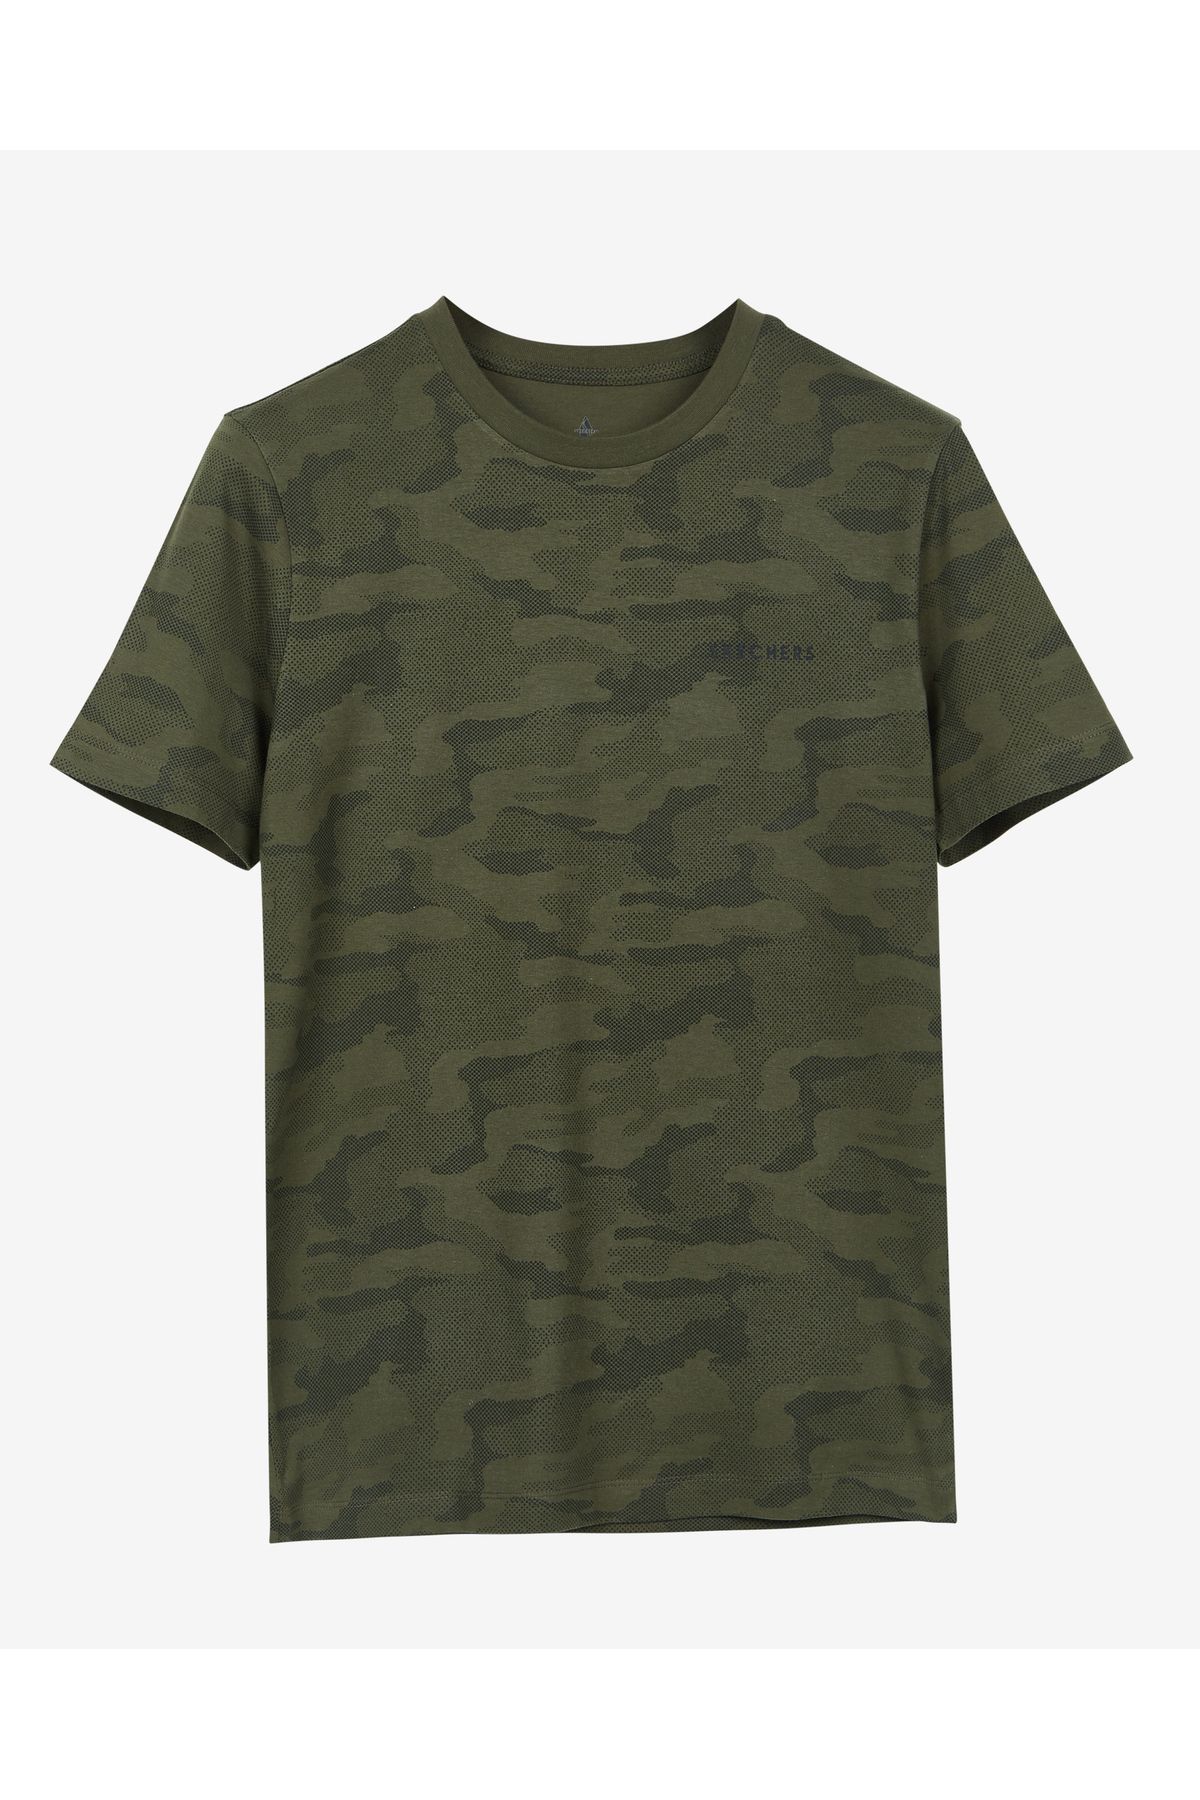 Skechers M Camo Print T-shirt Erkek Haki Tshirt S212188-310